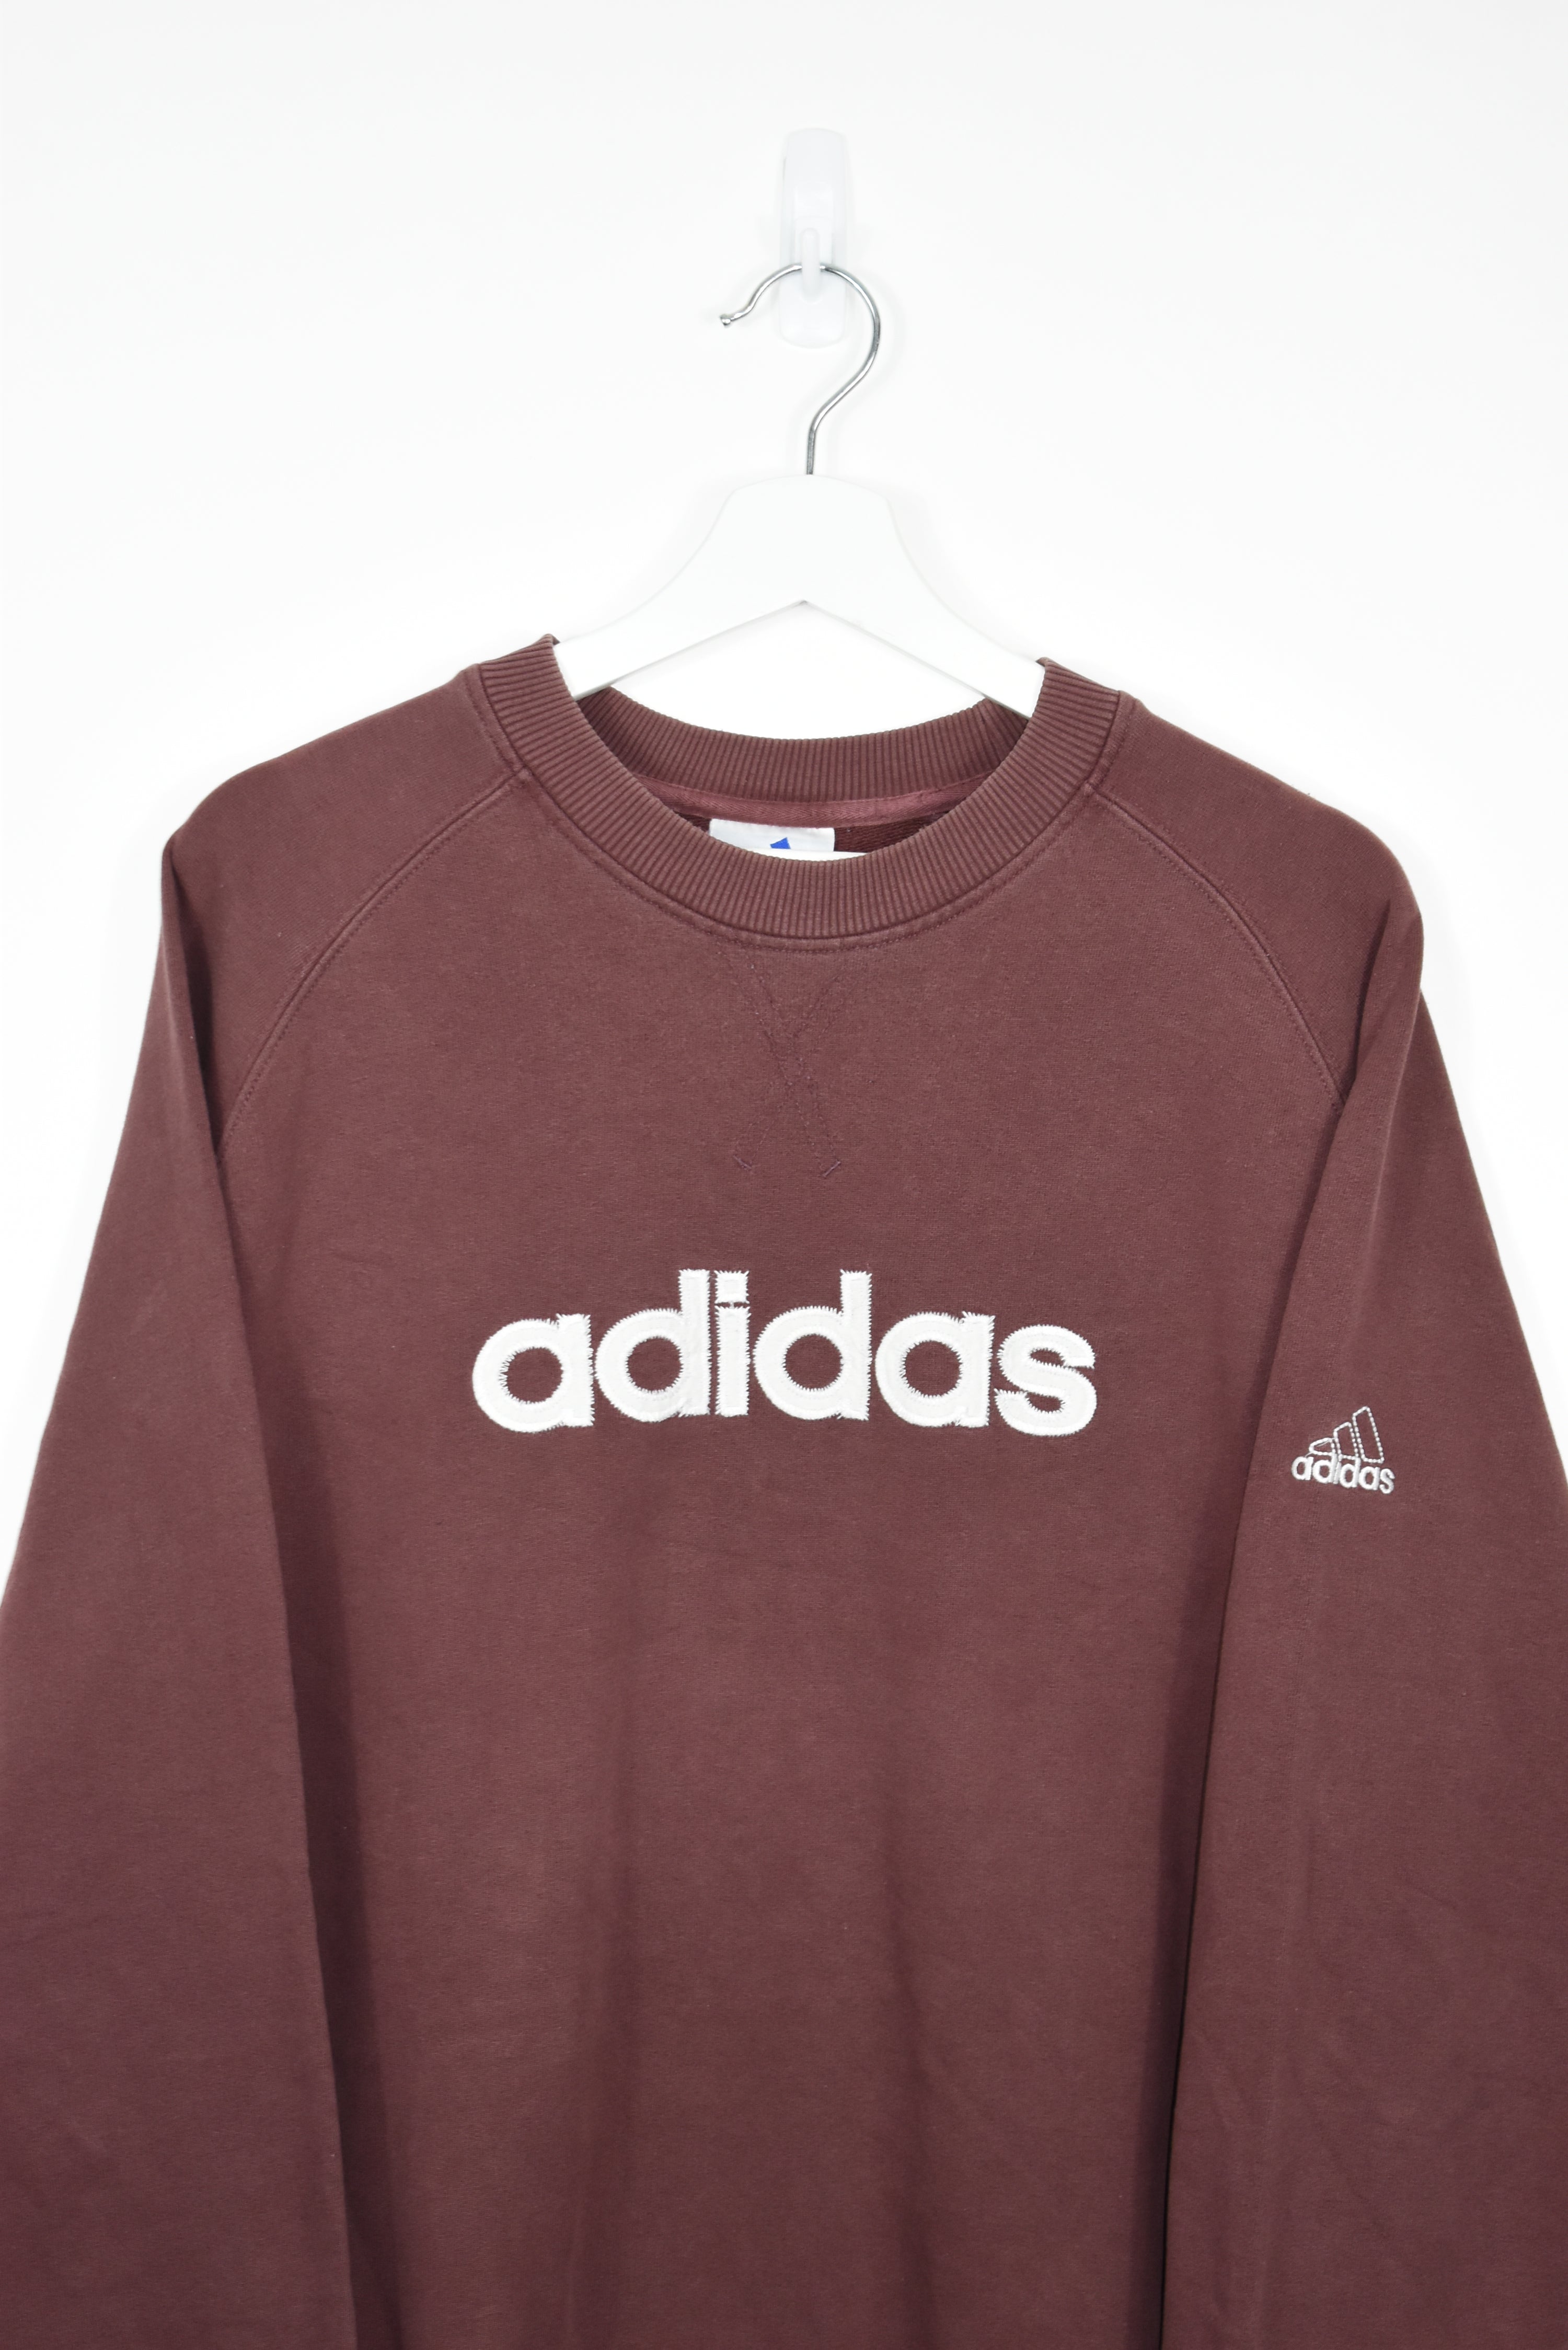 Vintage Adidas Embroidered Sweatshirt Xlarge